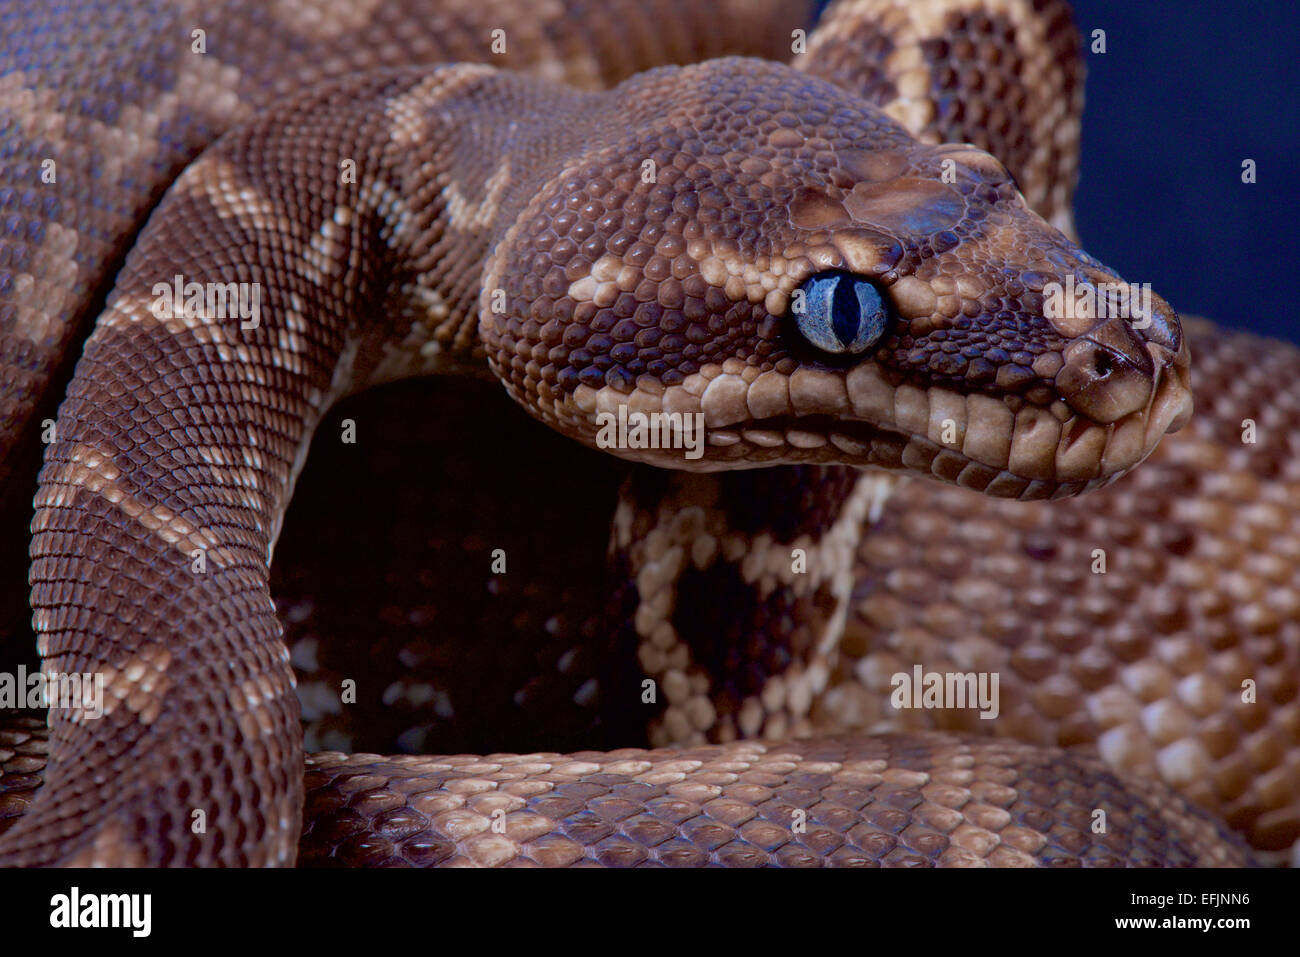 Rough-scaled python / Morelia carinata Stock Photo